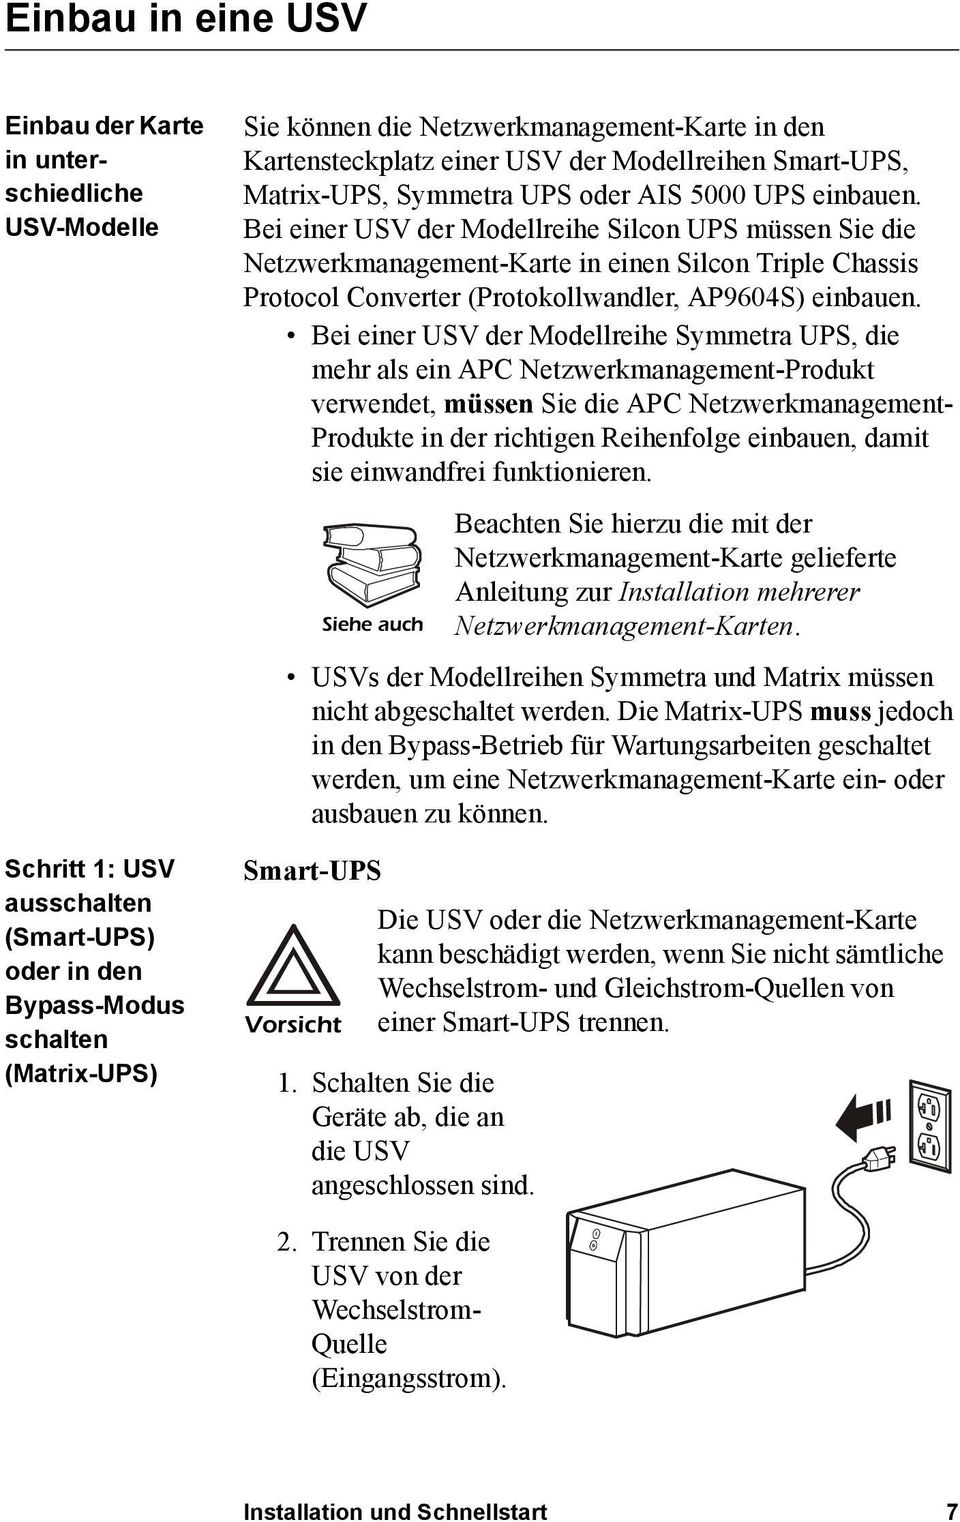 Bei einer USV der Modellreihe Silcon UPS müssen Sie die Netzwerkmanagement-Karte in einen Silcon Triple Chassis Protocol Converter (Protokollwandler, AP9604S) einbauen.